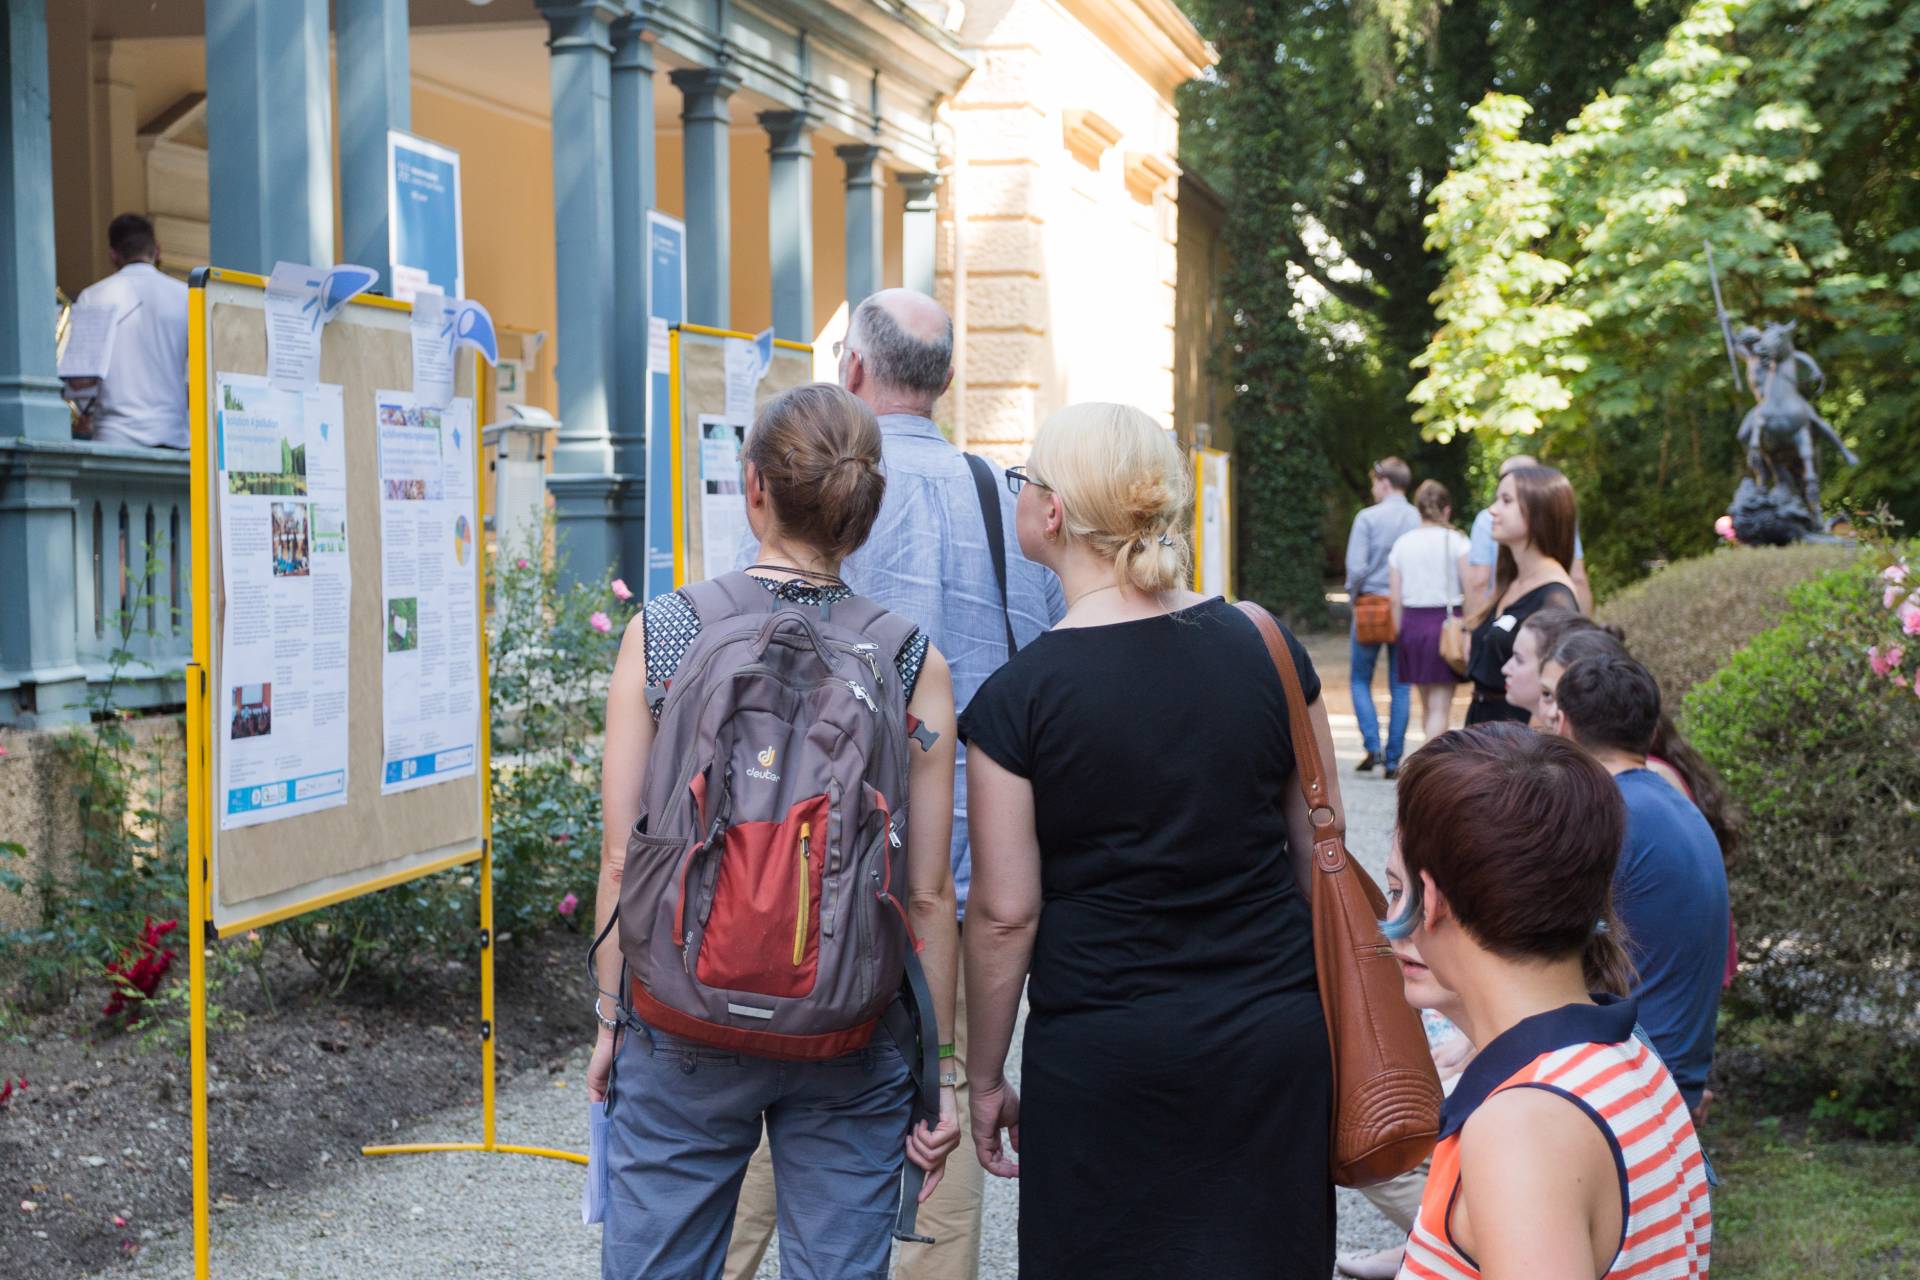 Rund 80 Gäste waren zur HSA_transfer | Themenschau am 26.06.2019 an die Hochschule Augsburg gekommen. Im Mittelpunkte standen studentische Praxisprojekte, die gesellschaftliche Zukunftsthemen behandeln. 